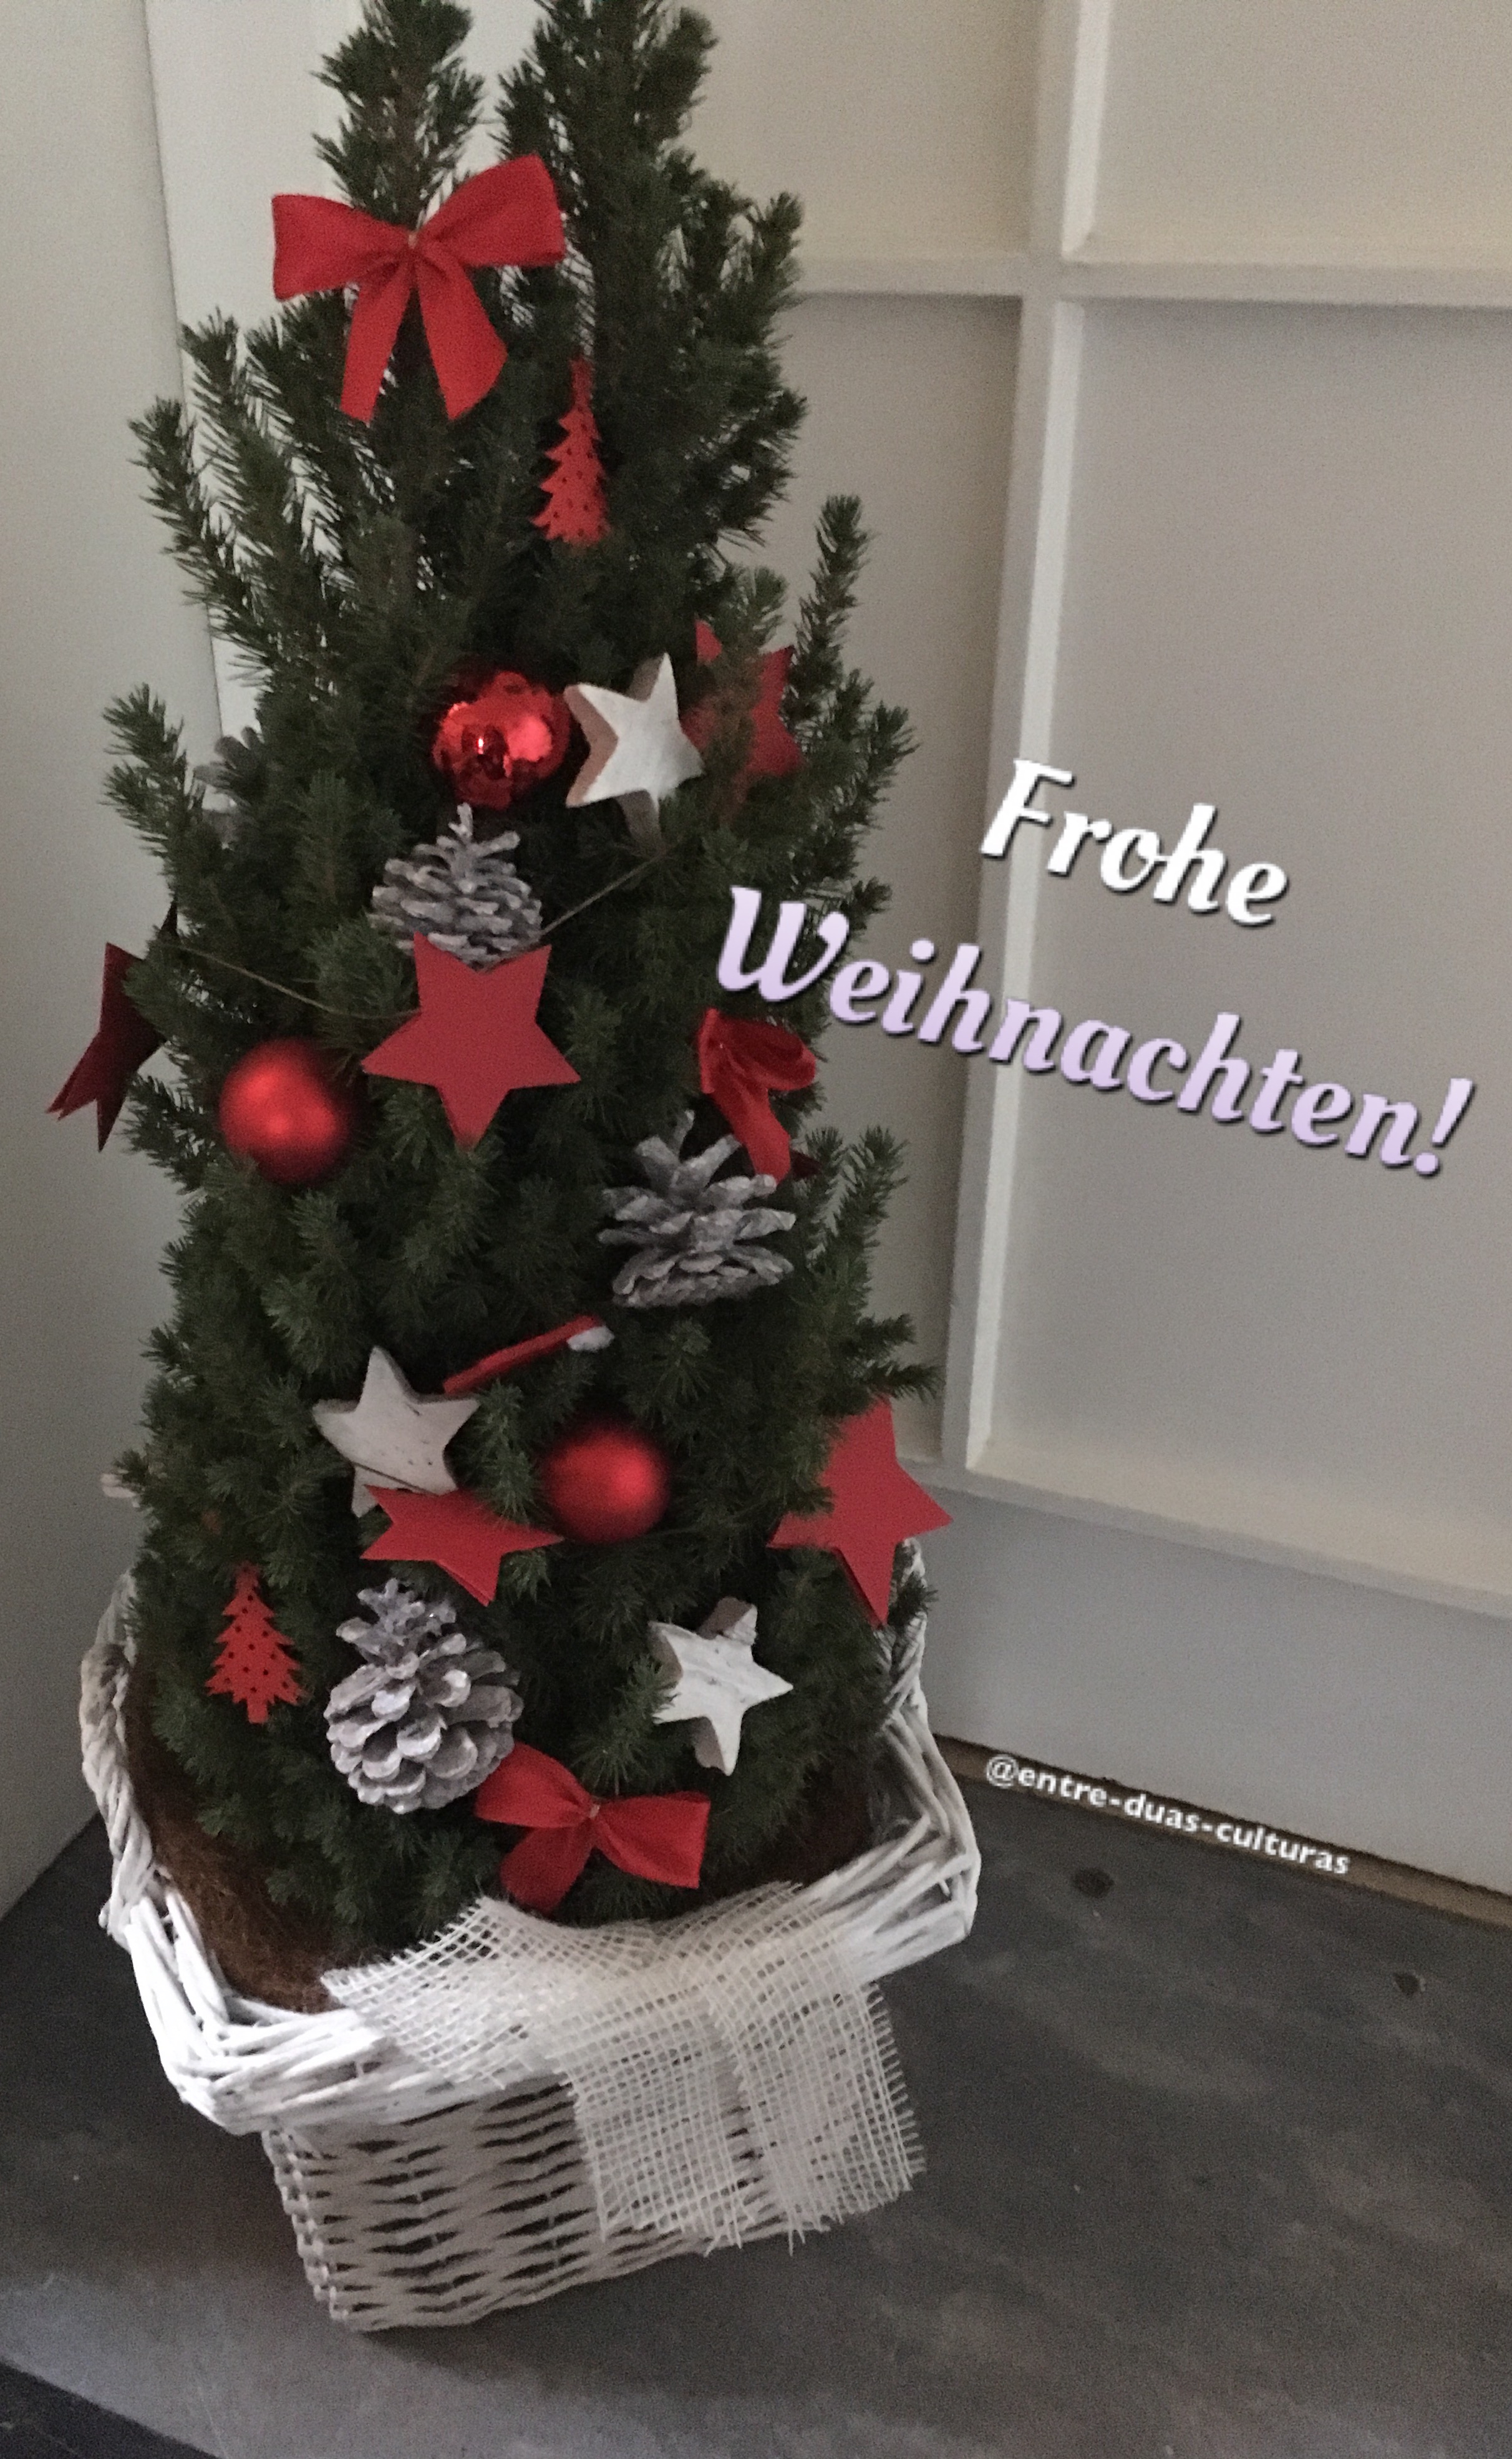 Mensagem de Natal (contém áudio!) | Weihnachtsgrüße - Entre duas culturas